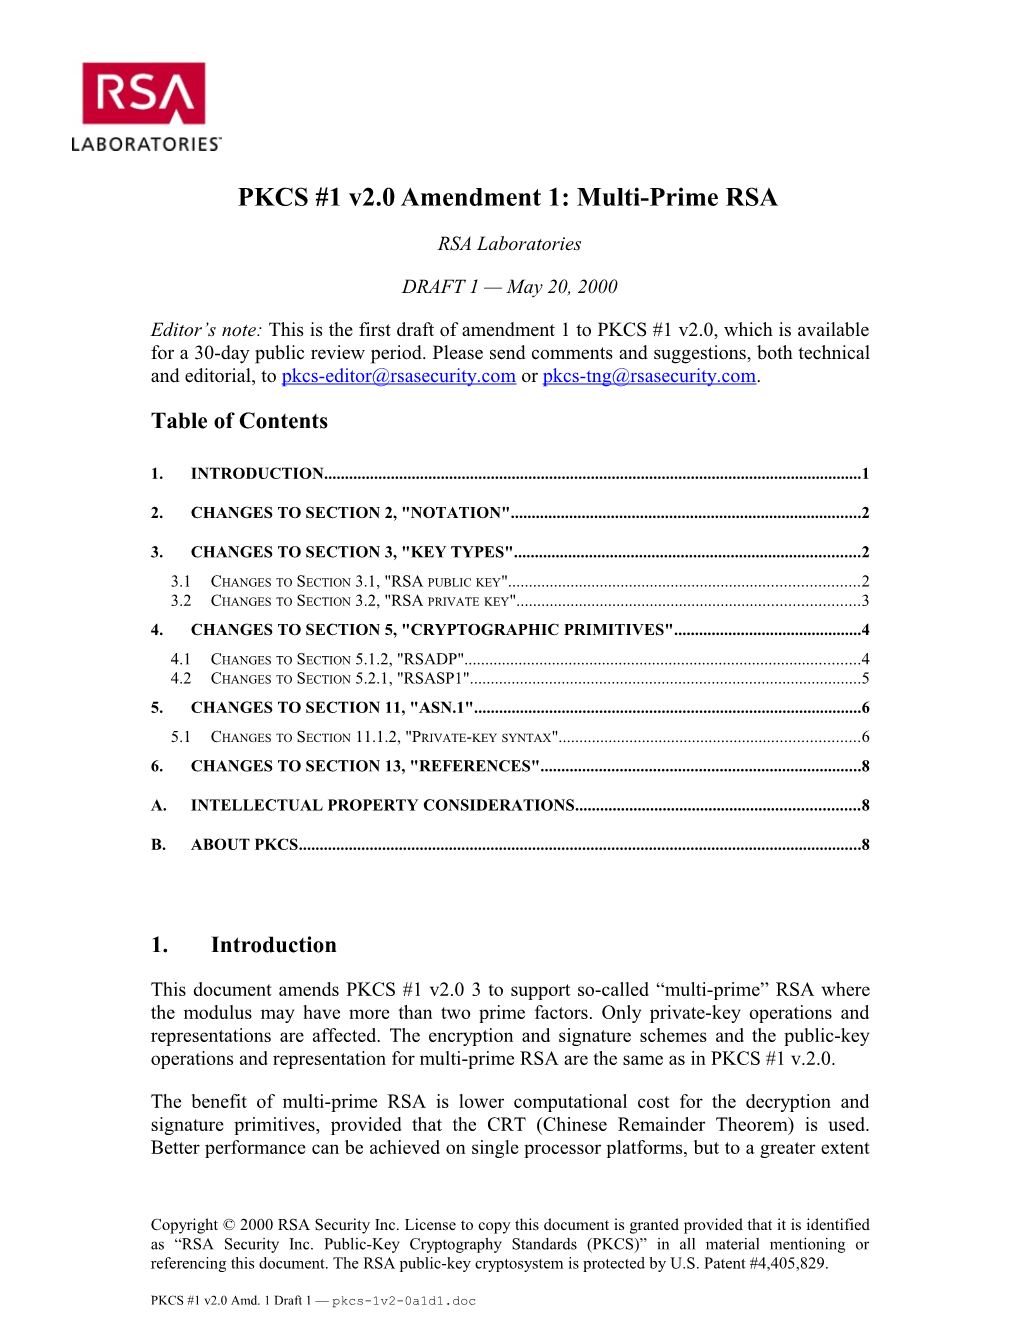 PKCS #1 V2.0 Amendment 1: Multi-Prime RSA